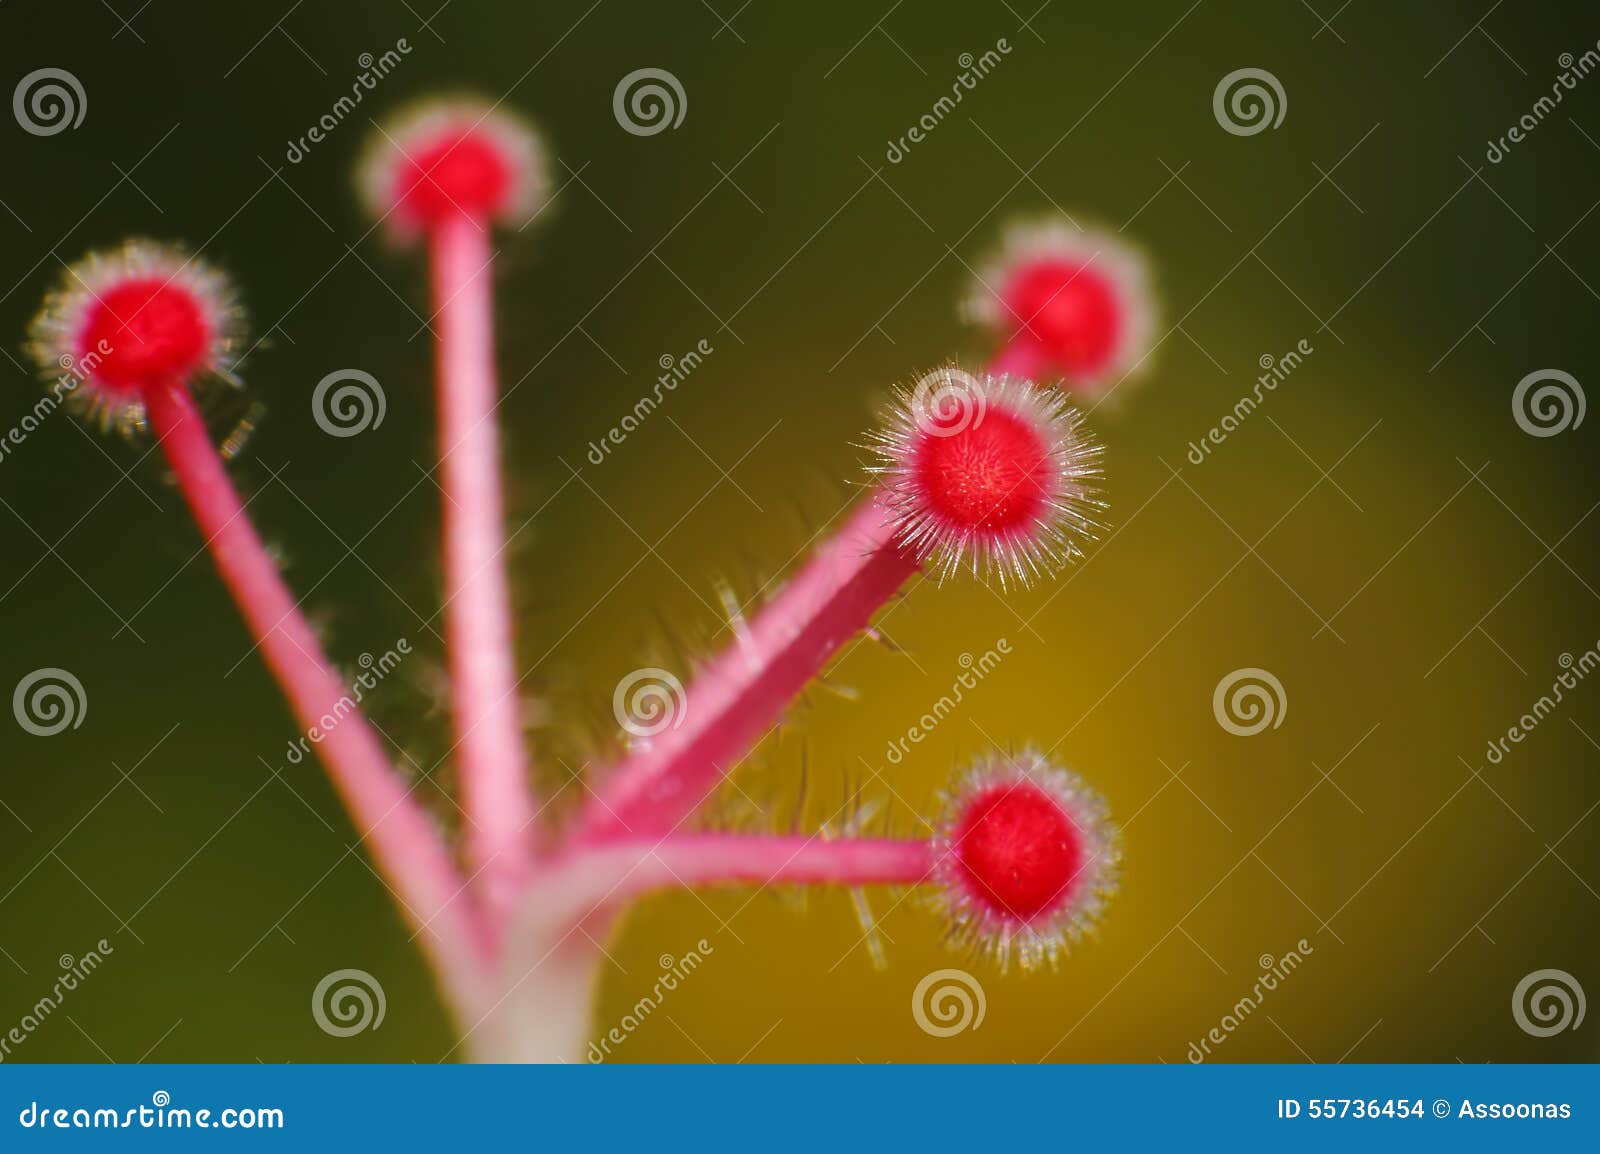 shoe flower carpel hibiscus syriacus